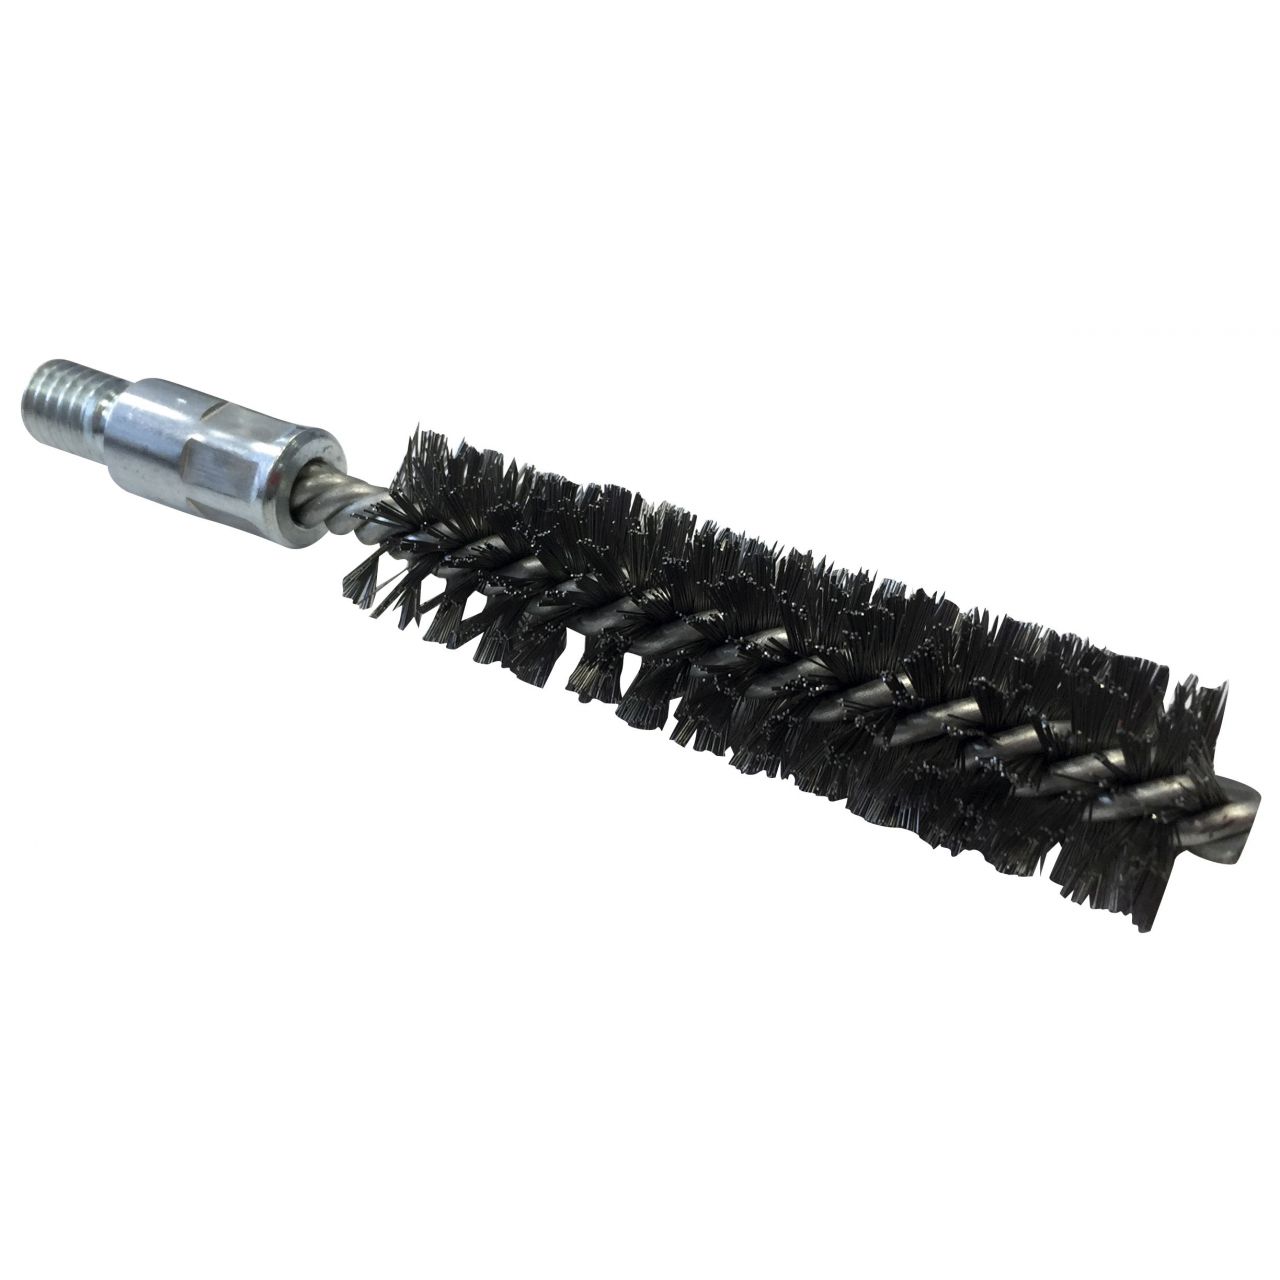 Cepillo limpiatubos de acero con rosca 1/2”BSW Ø 50 mm (100x160x0.3 mm)